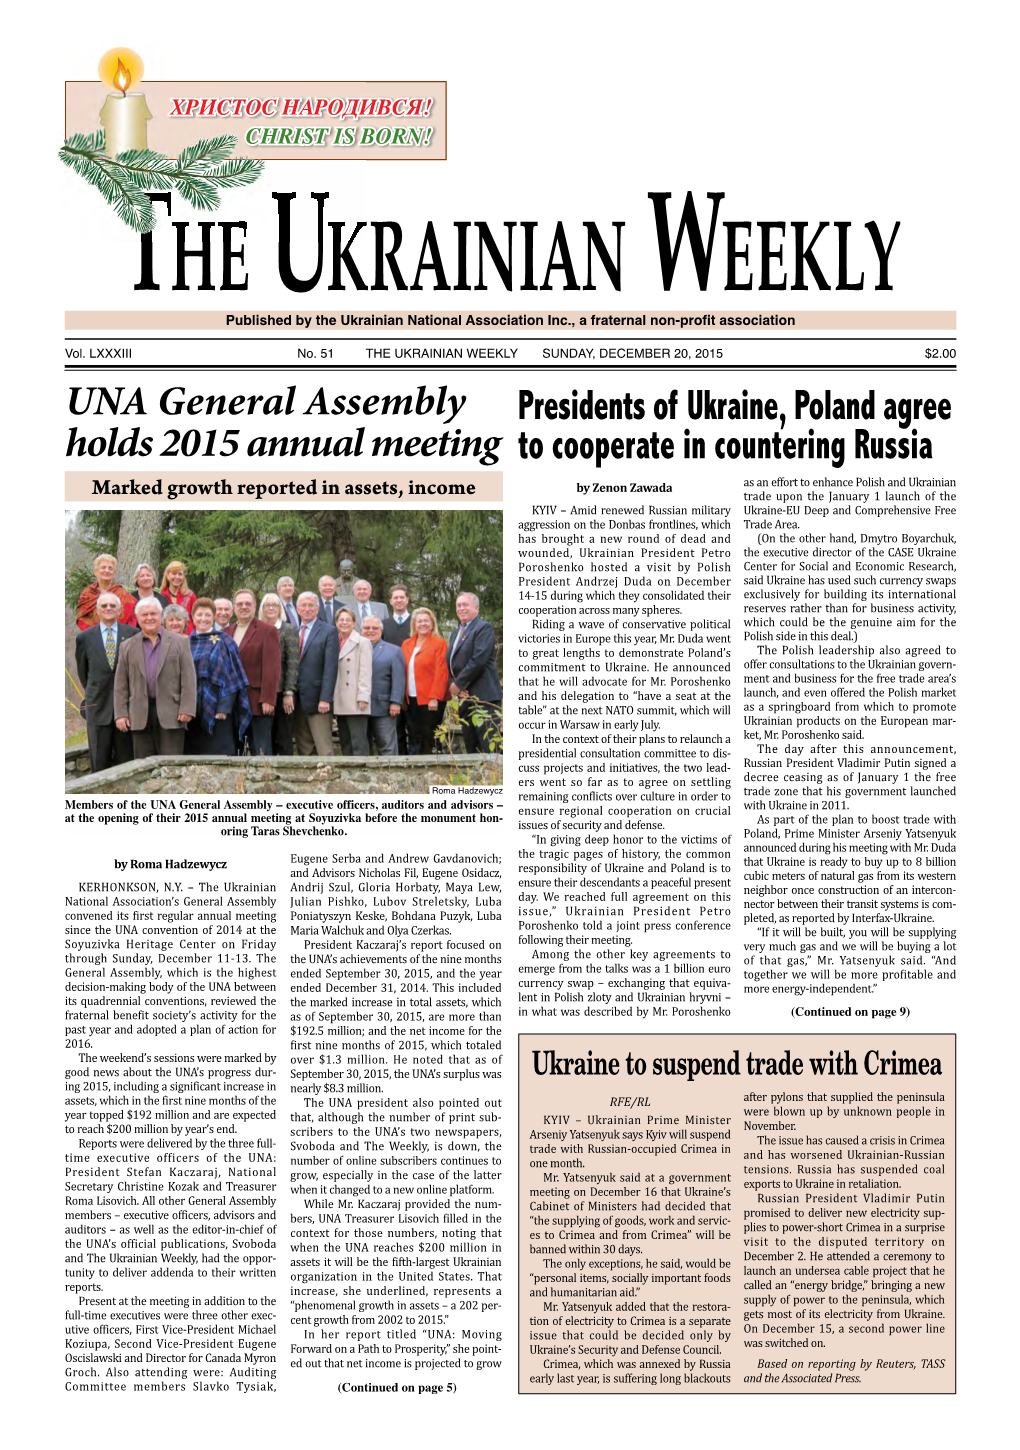 The Ukrainian Weekly, 2015